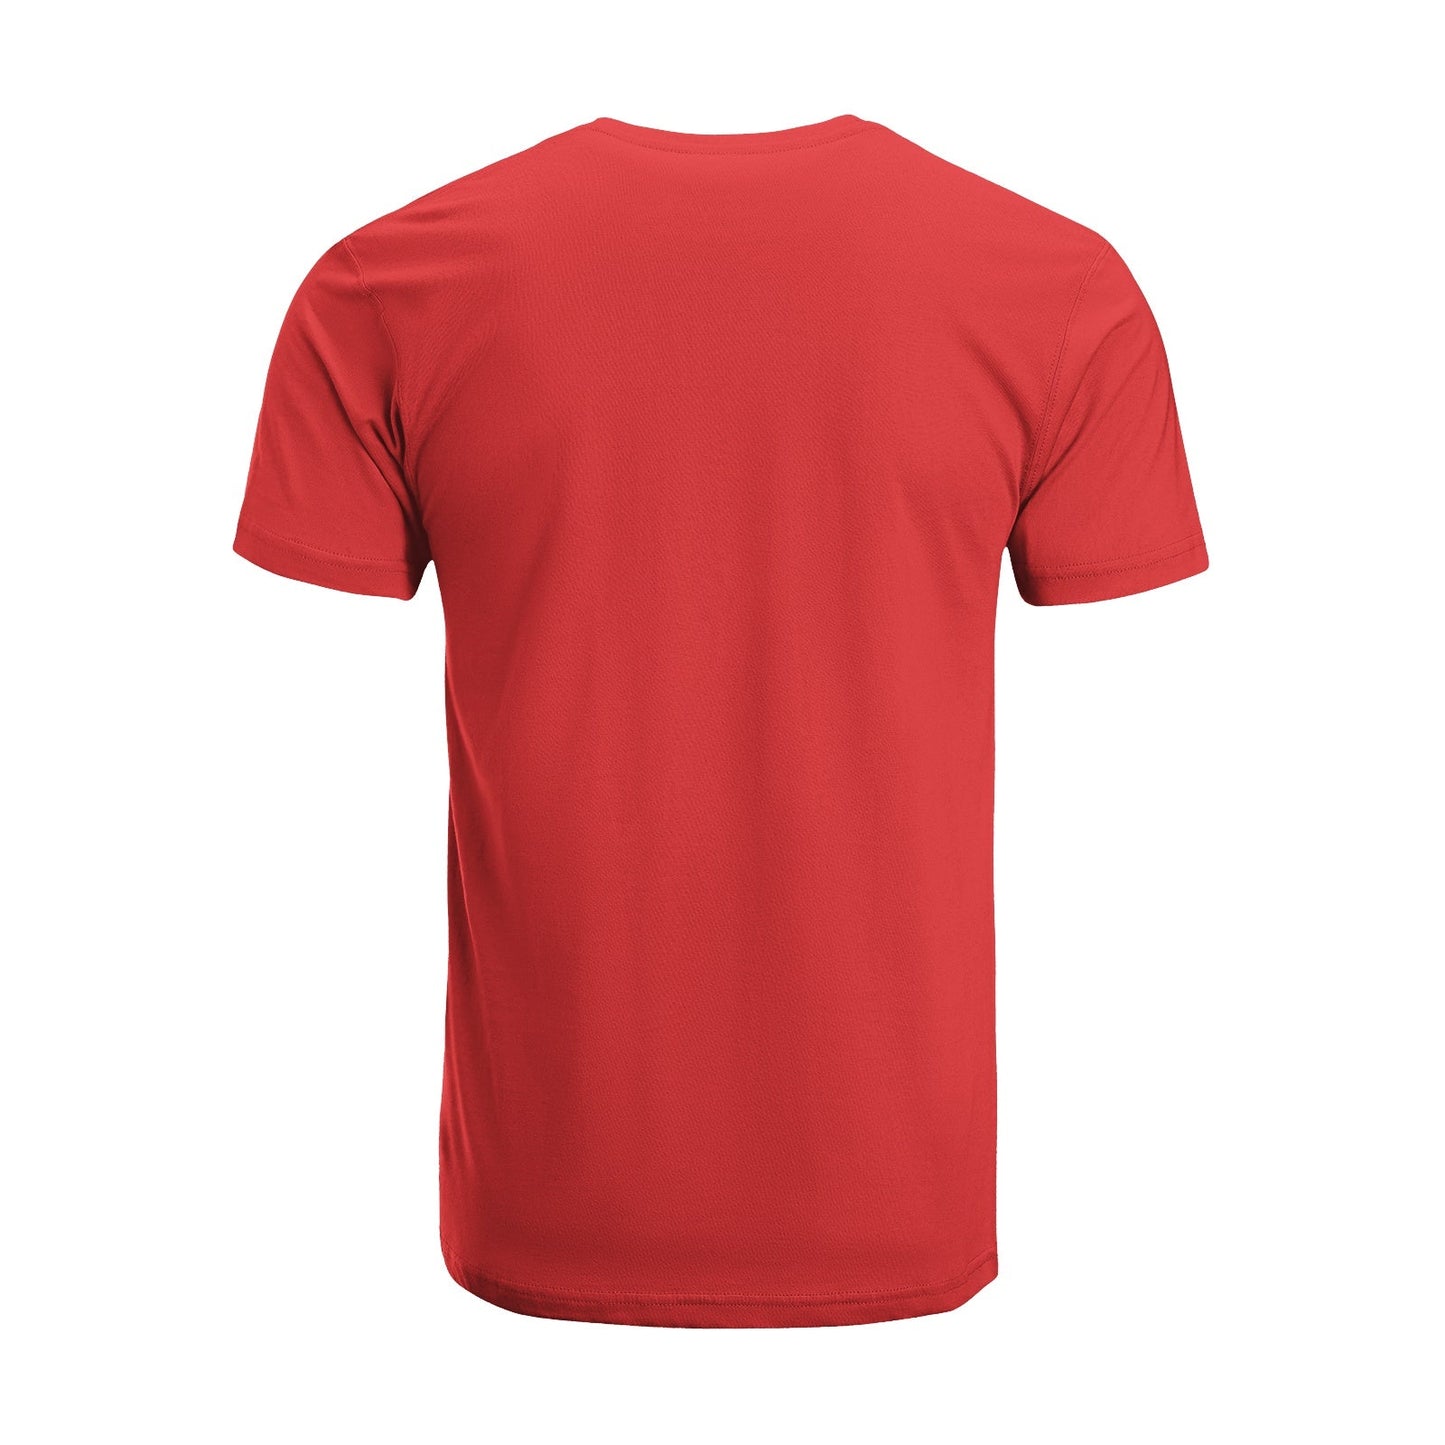 Unisex Short Sleeve Crew Neck Cotton Jersey T-Shirt TRUCK 33